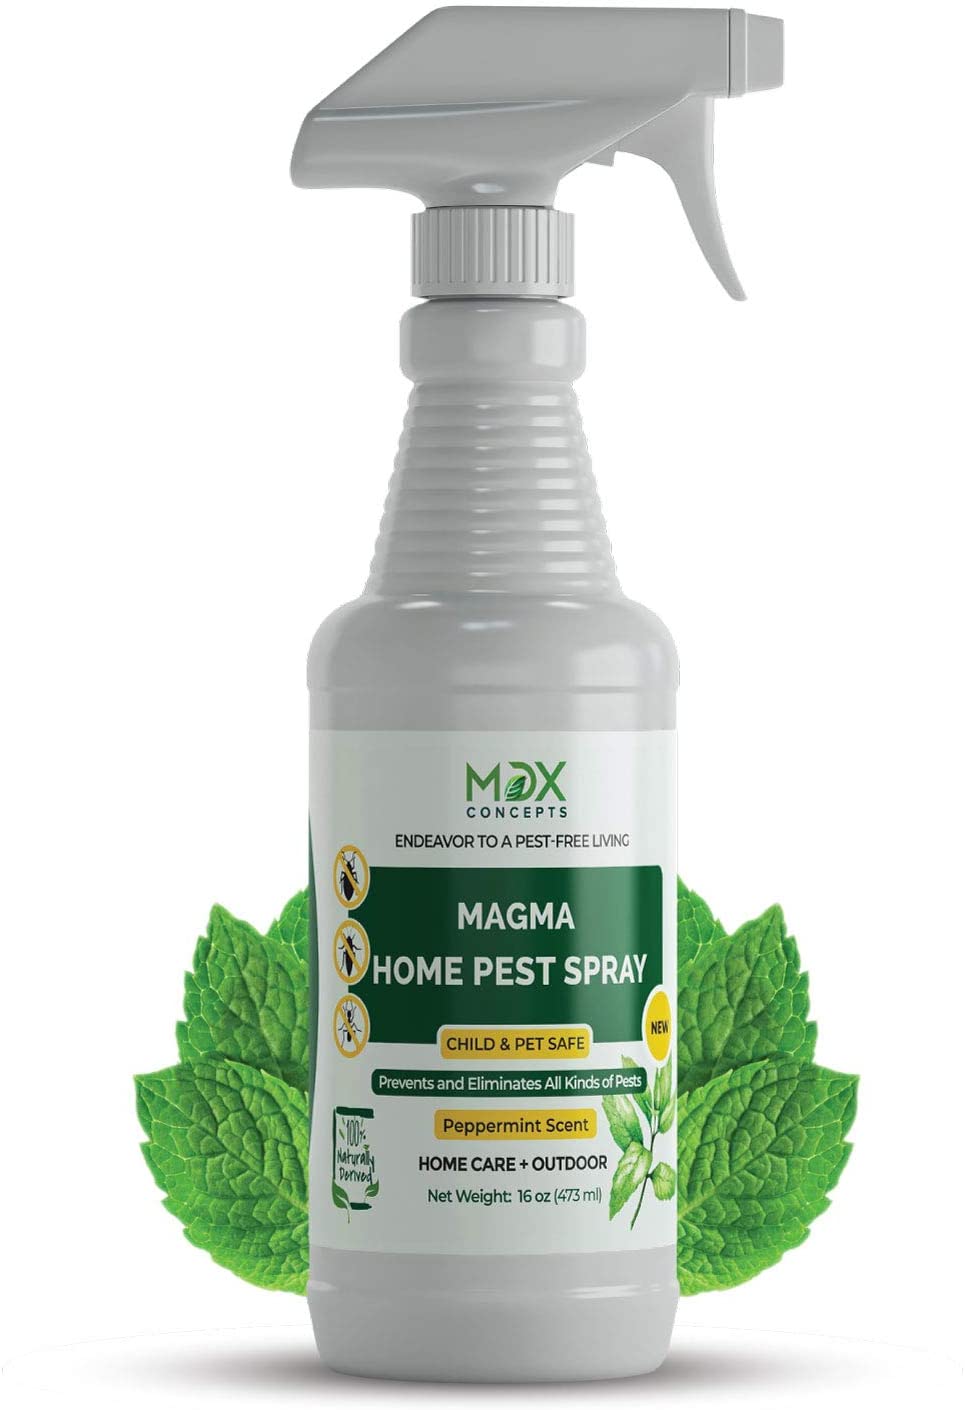 mdxconcepts Organic Home Pest Control Spray 